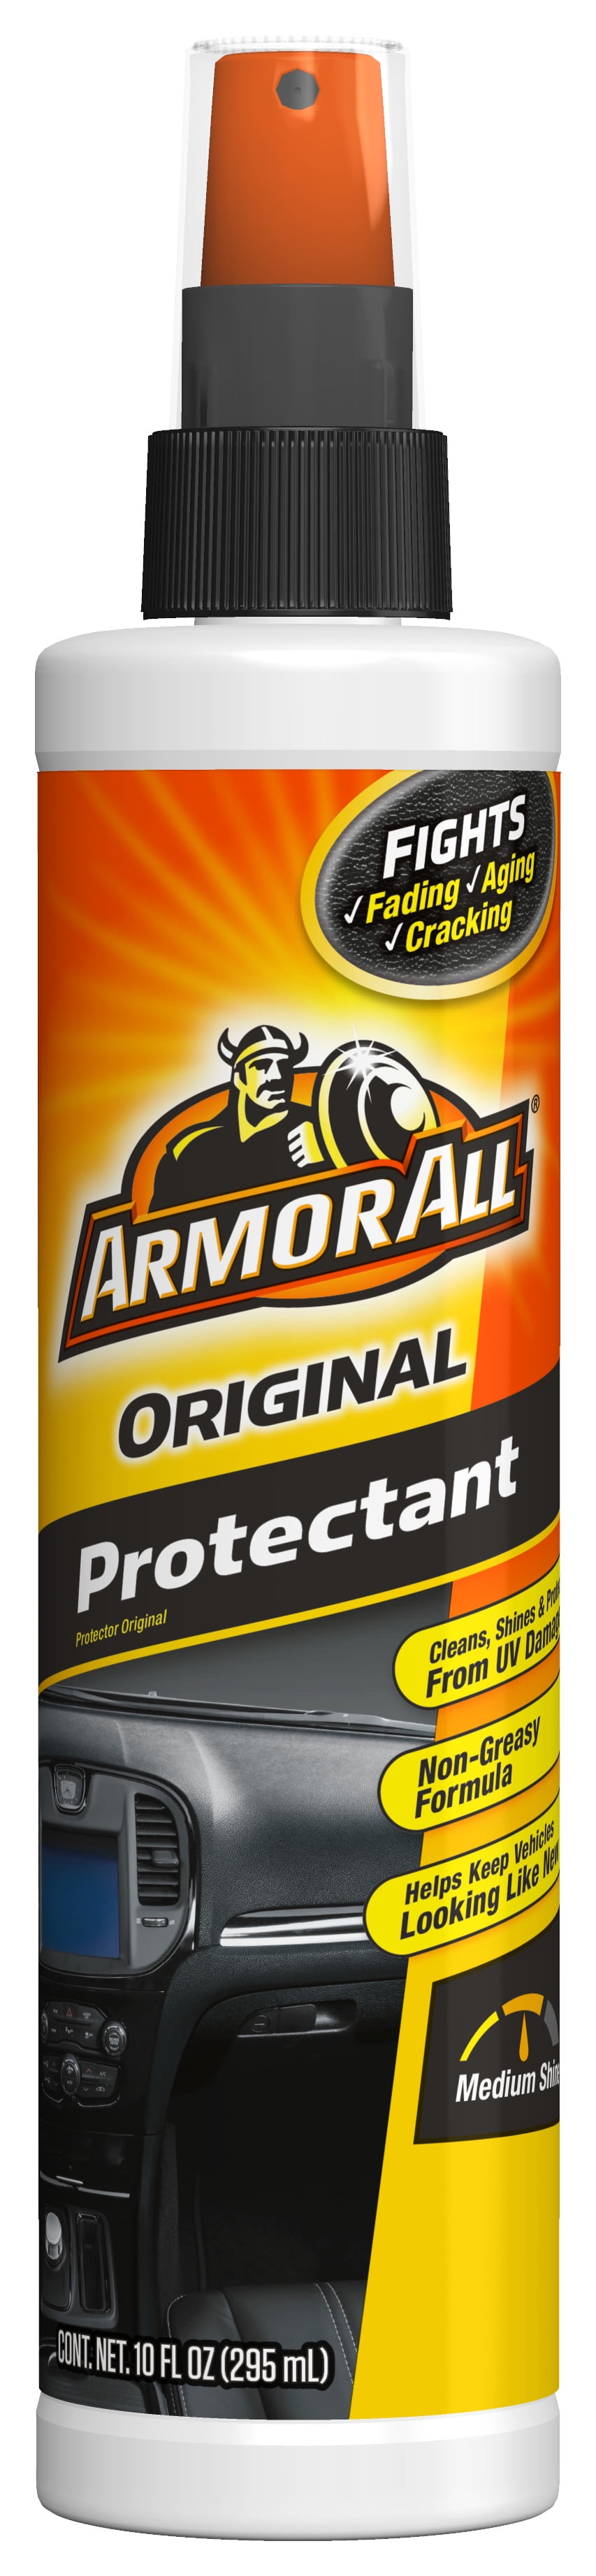 Armor All Original Protectant, 28 oz Spray Bottle, 6/Carton